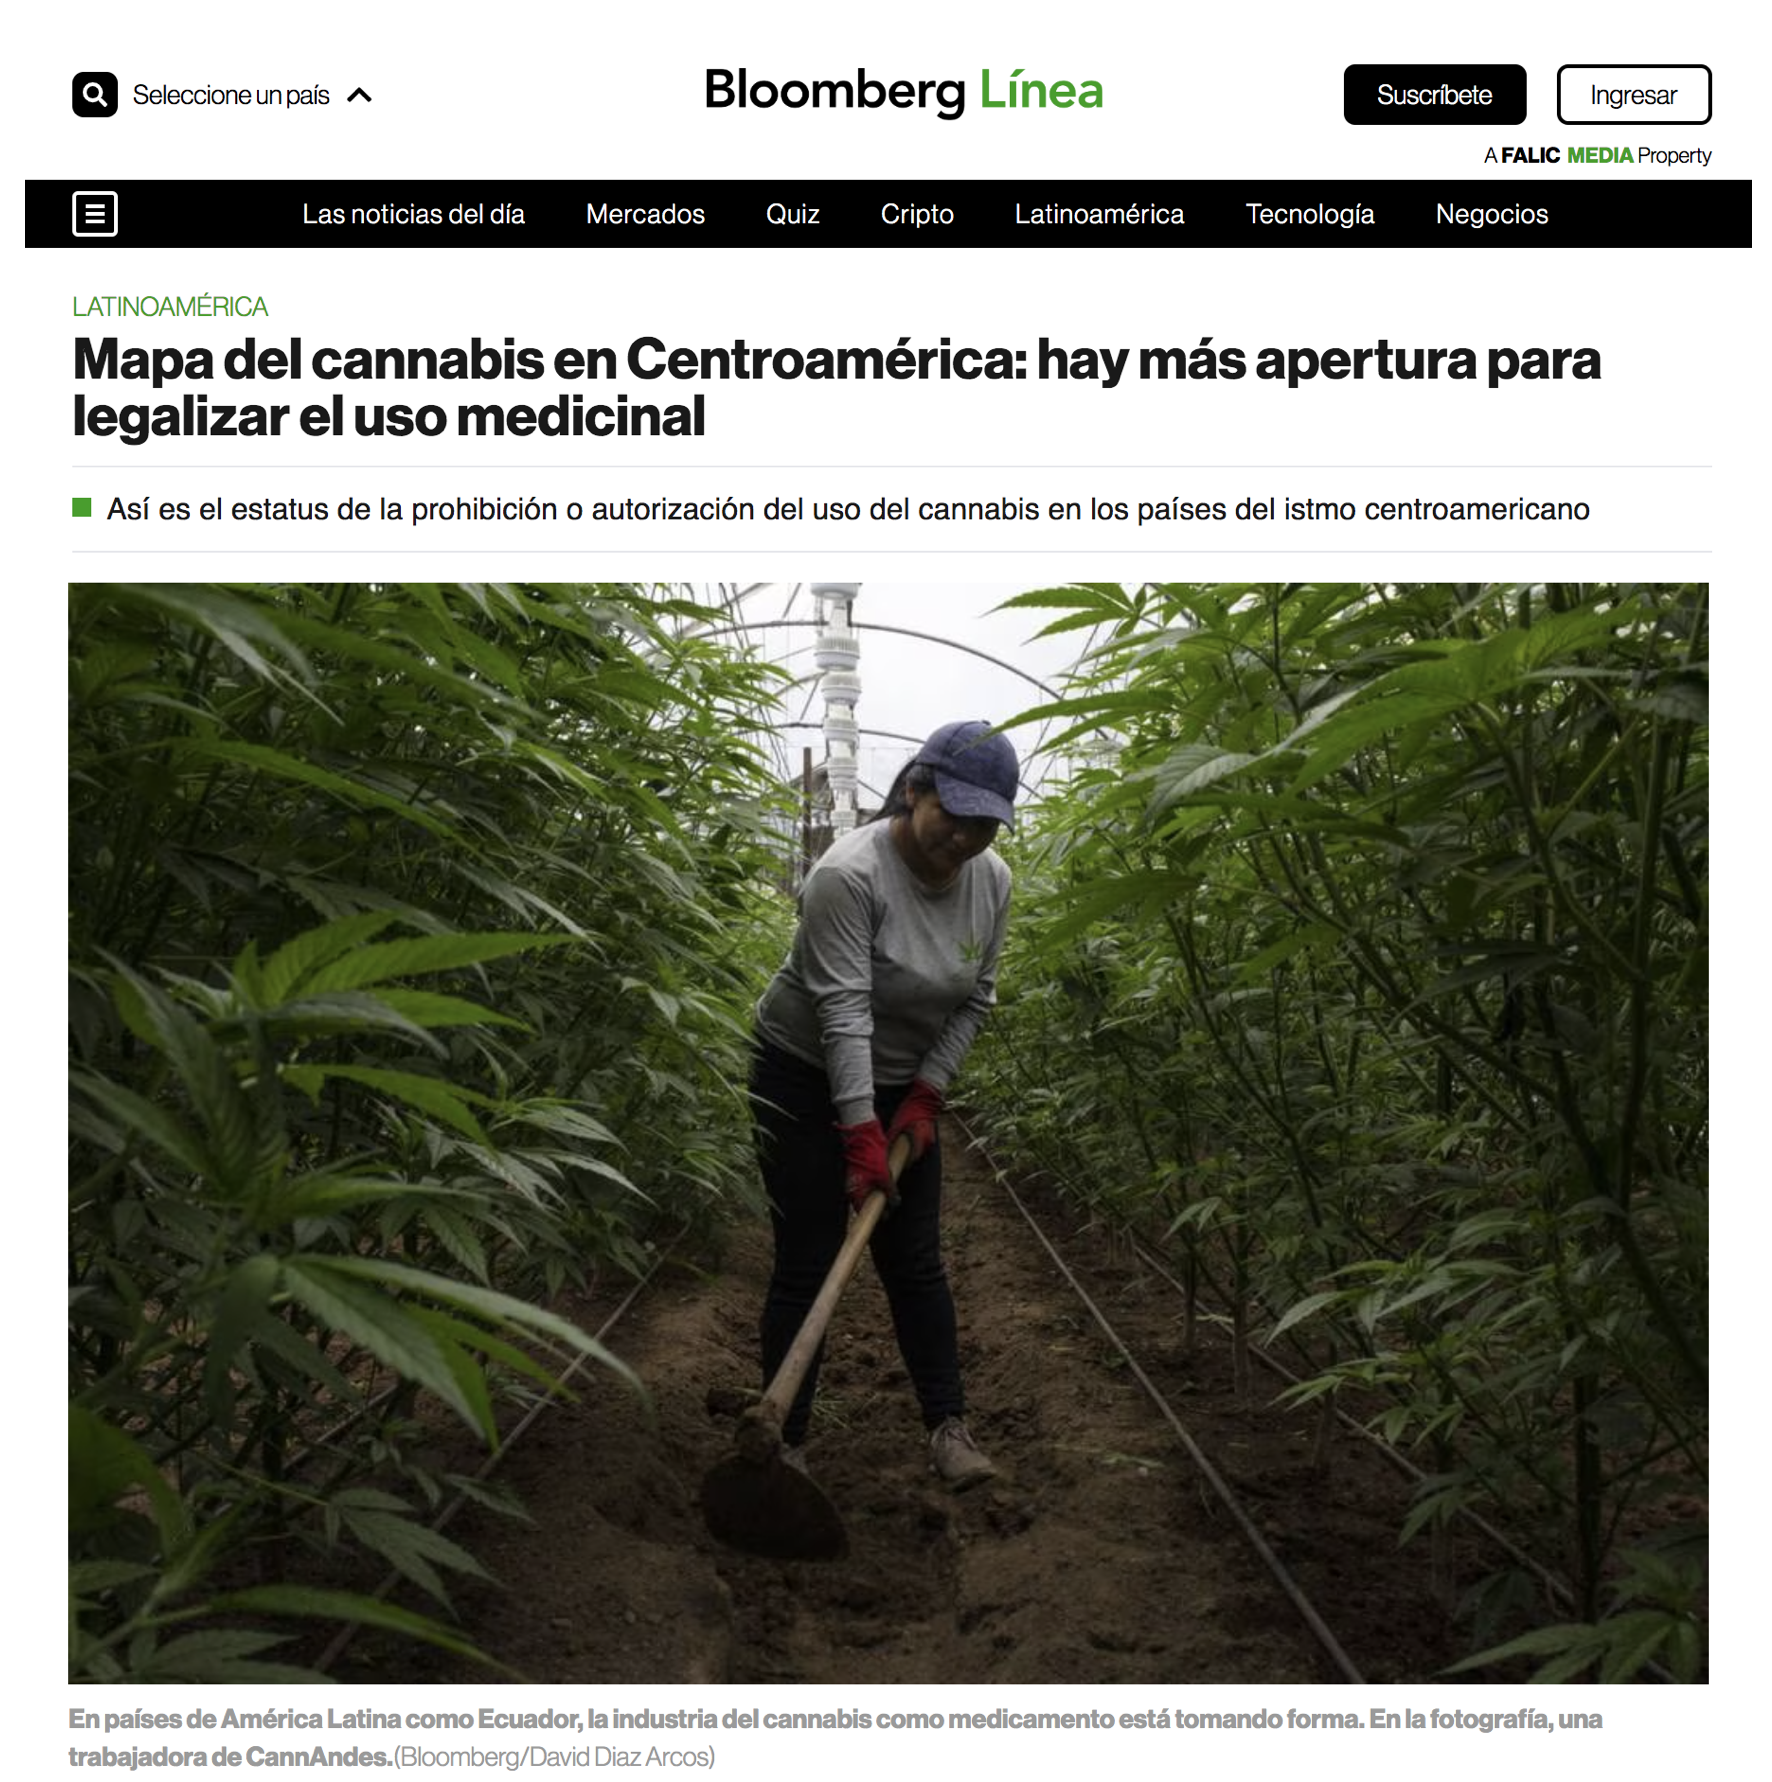 Mapa del cannabis en Centroamérica: hay más apertura para legalizar el uso medicinal